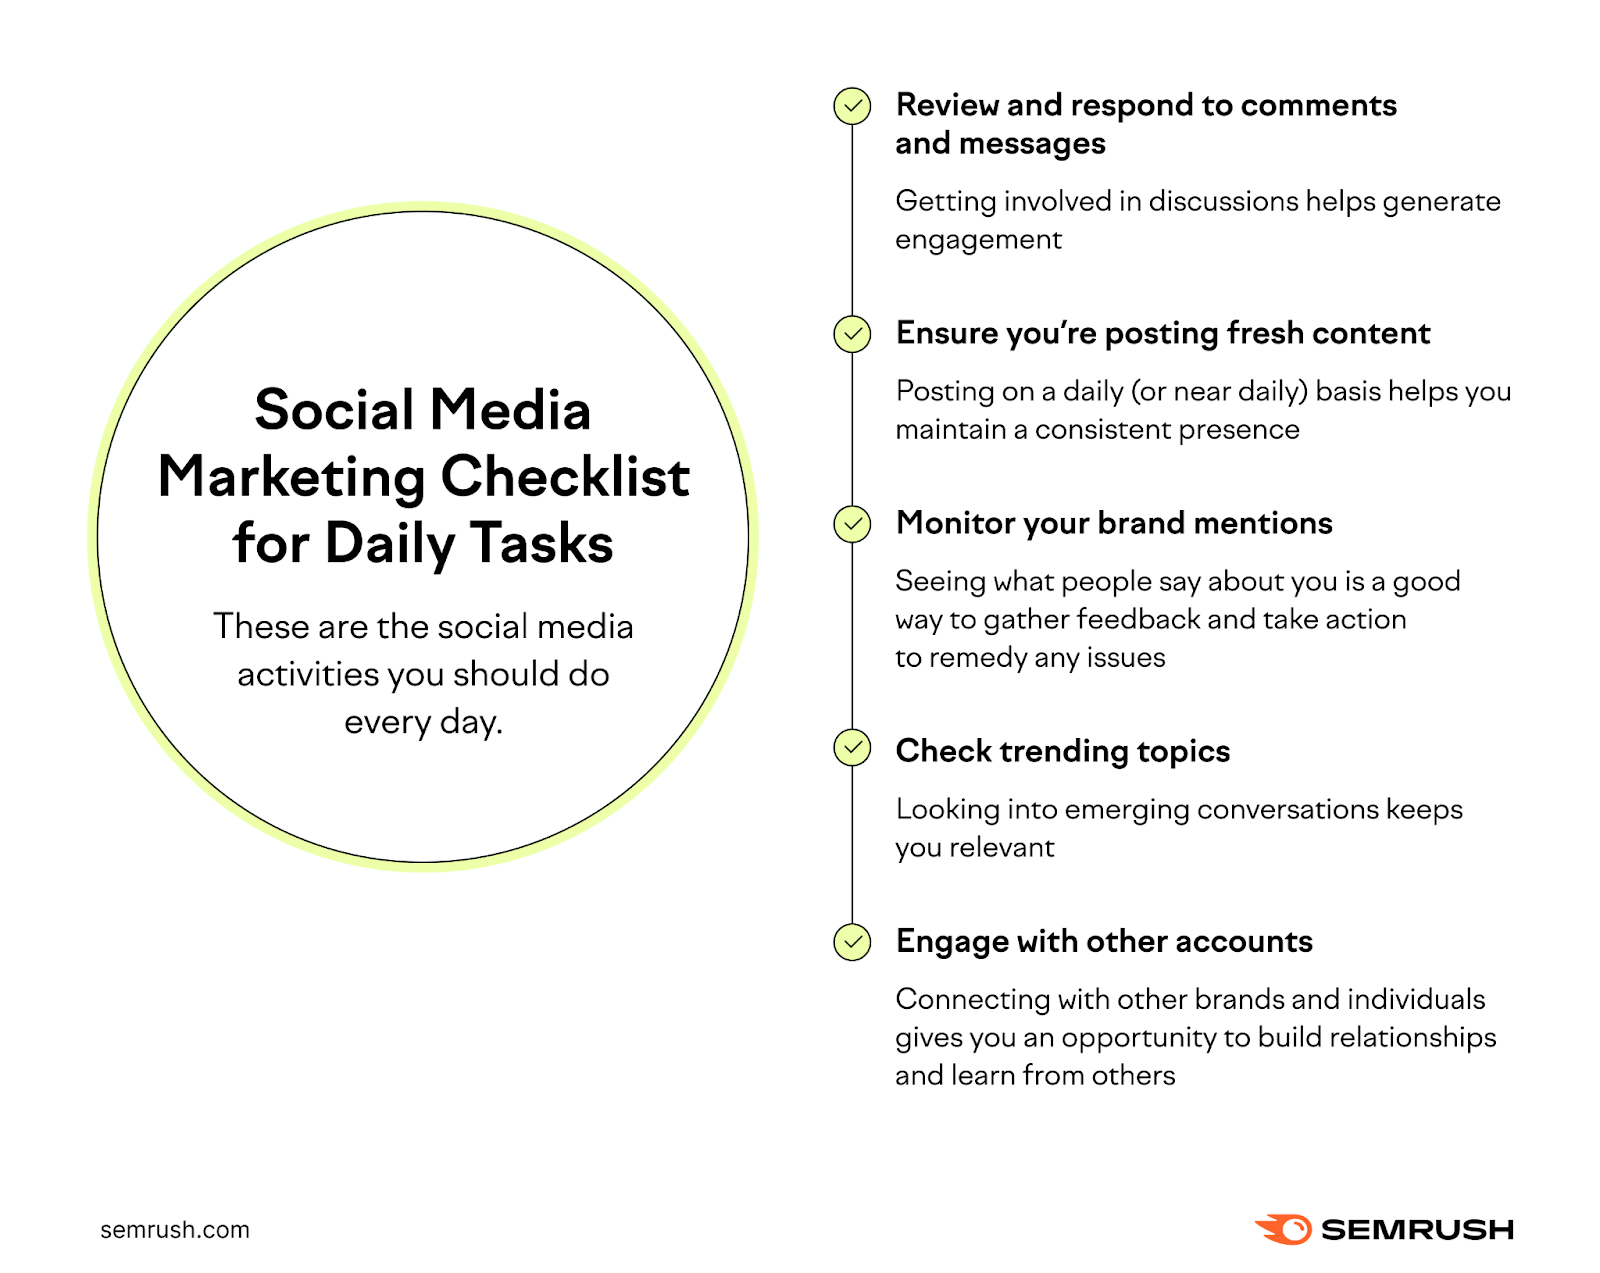 Social media marketing checklist for daily tasks